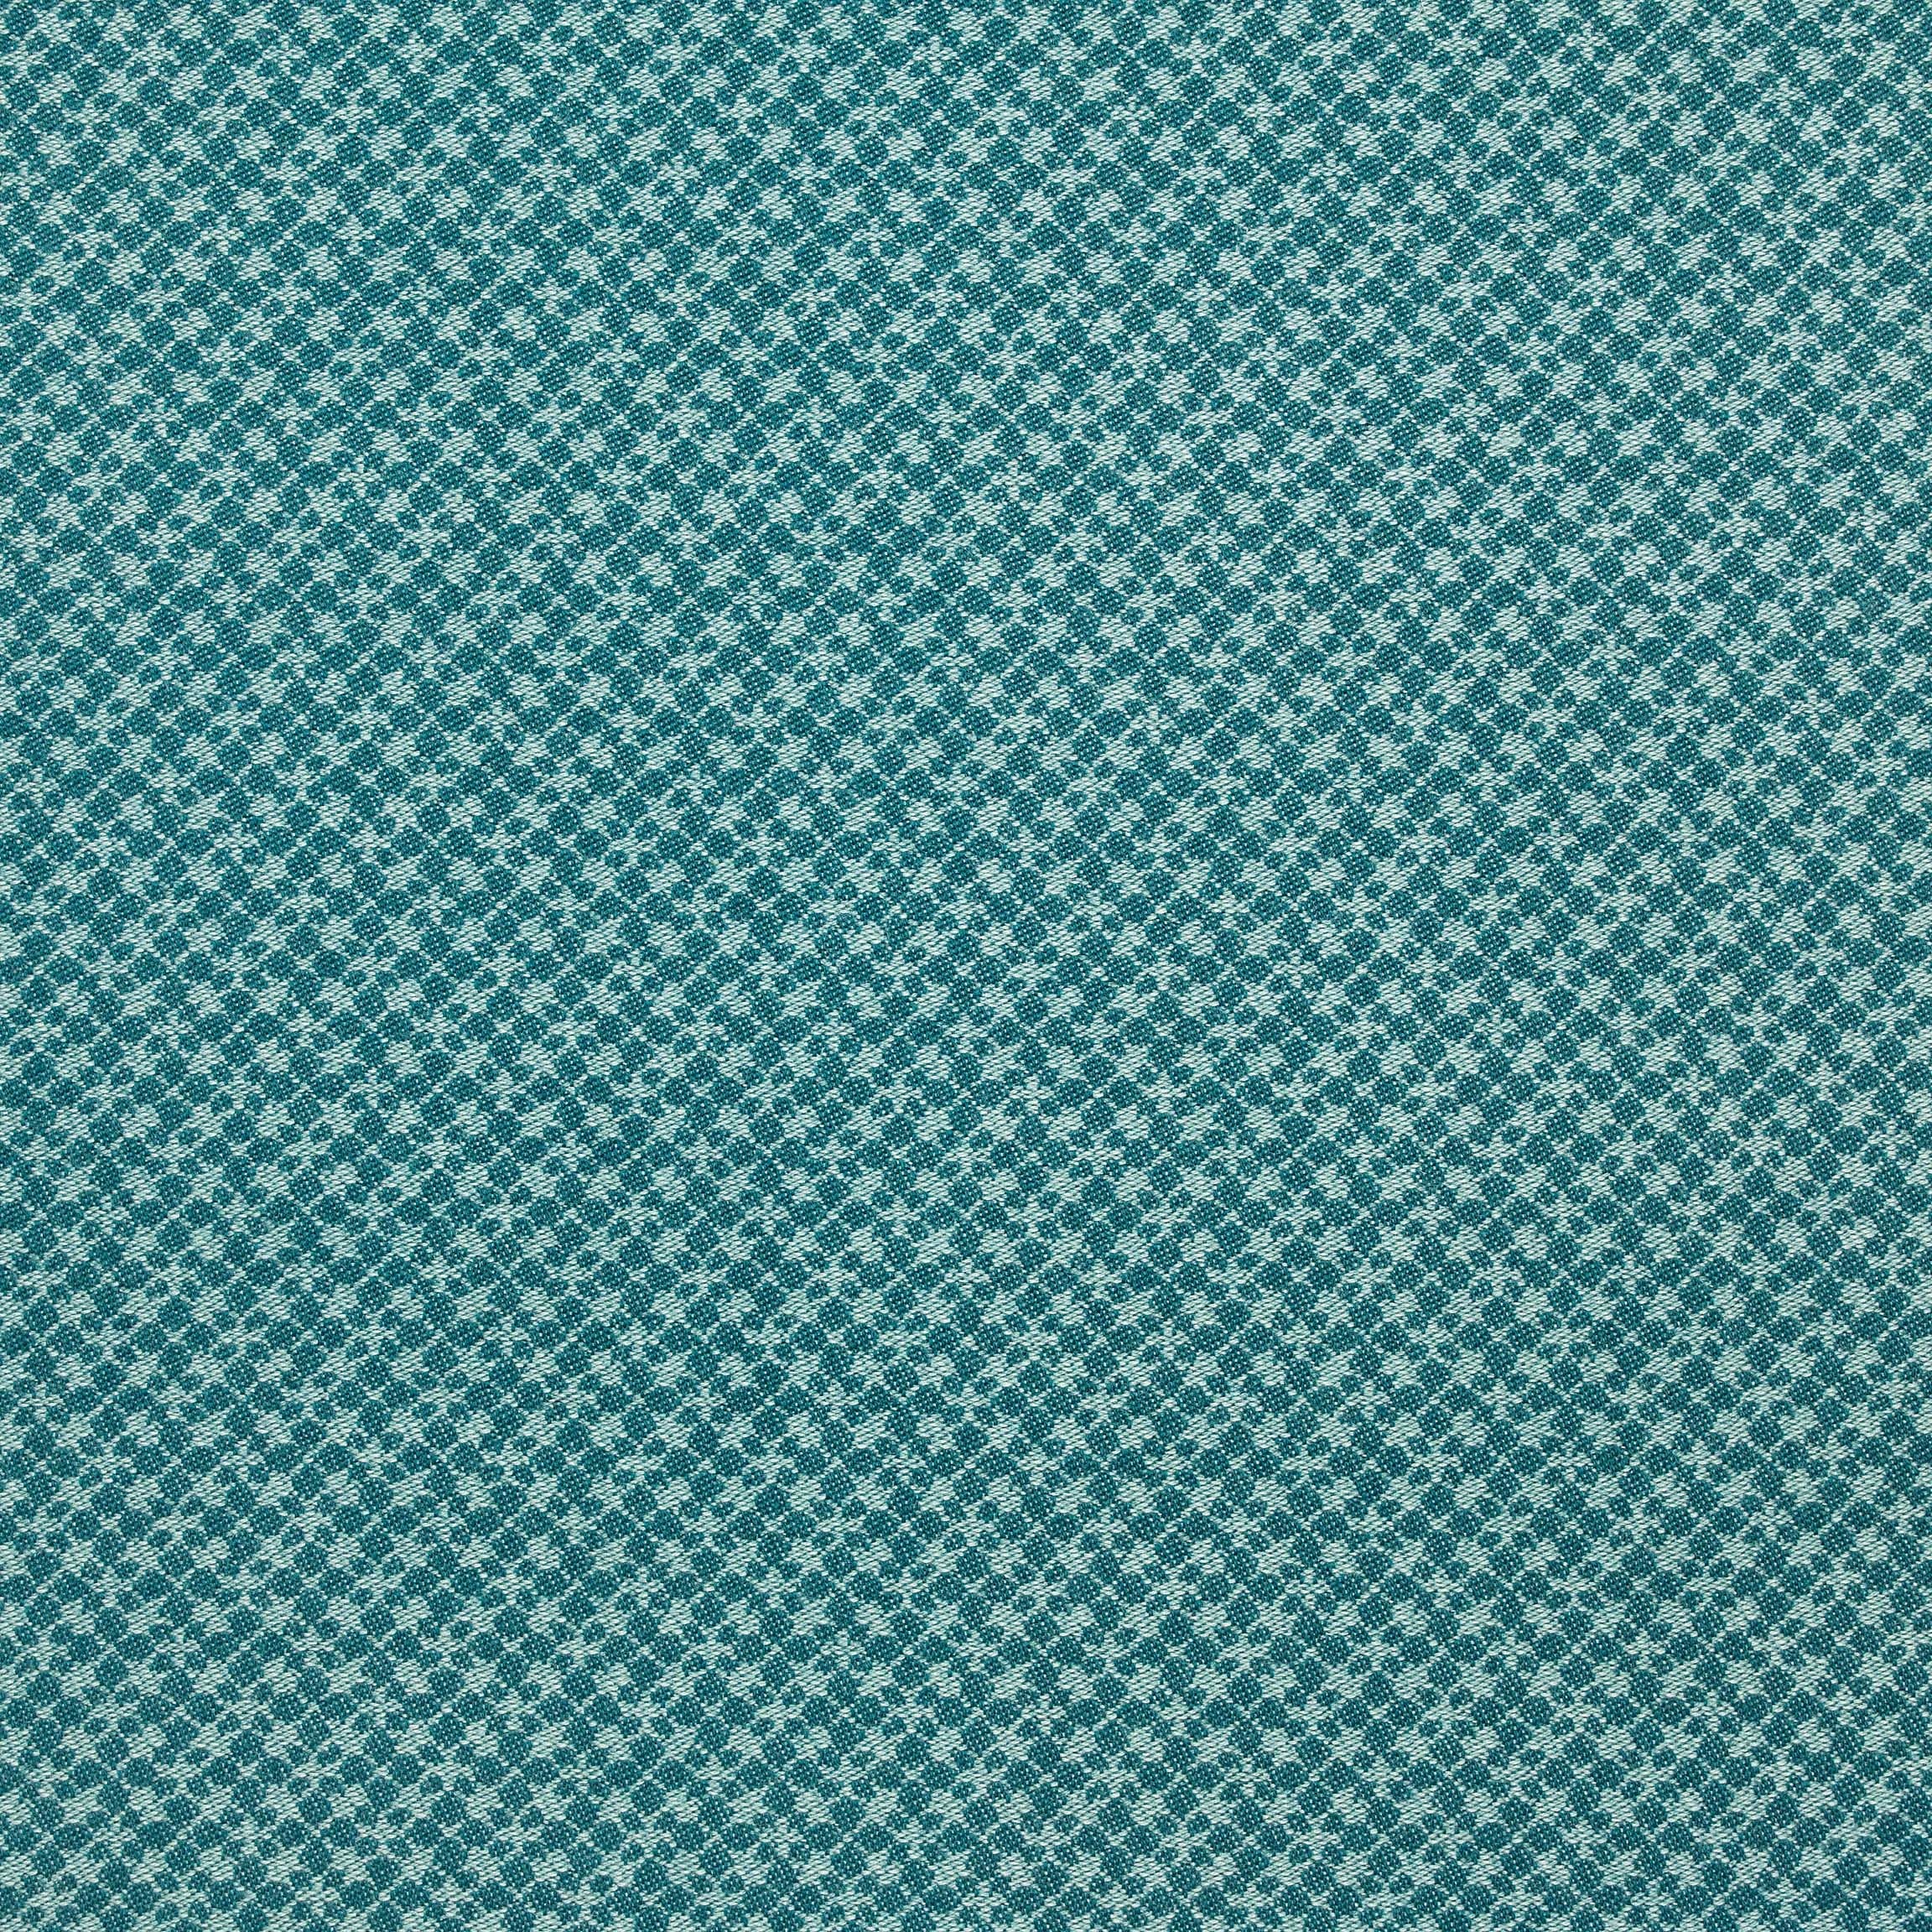  Портьерная ткань VETRIOLA MARINE, ширина 139 см  - Фото